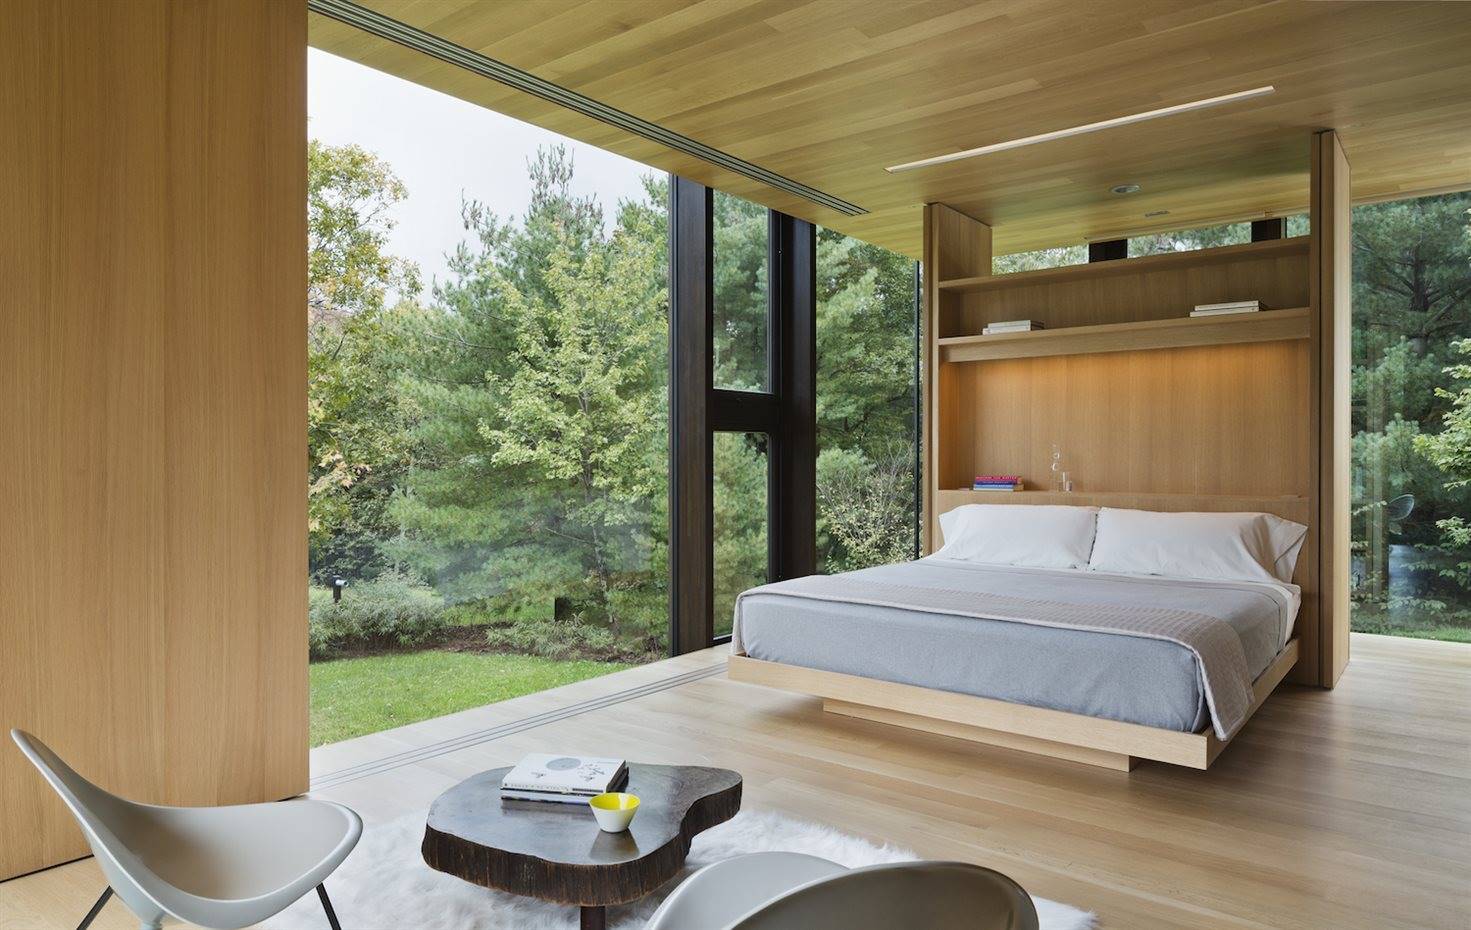 Desai Chia Architecture firma esta casa 100% sostenible. [] Desai Chia Architecture firma esta casa 100% sostenible